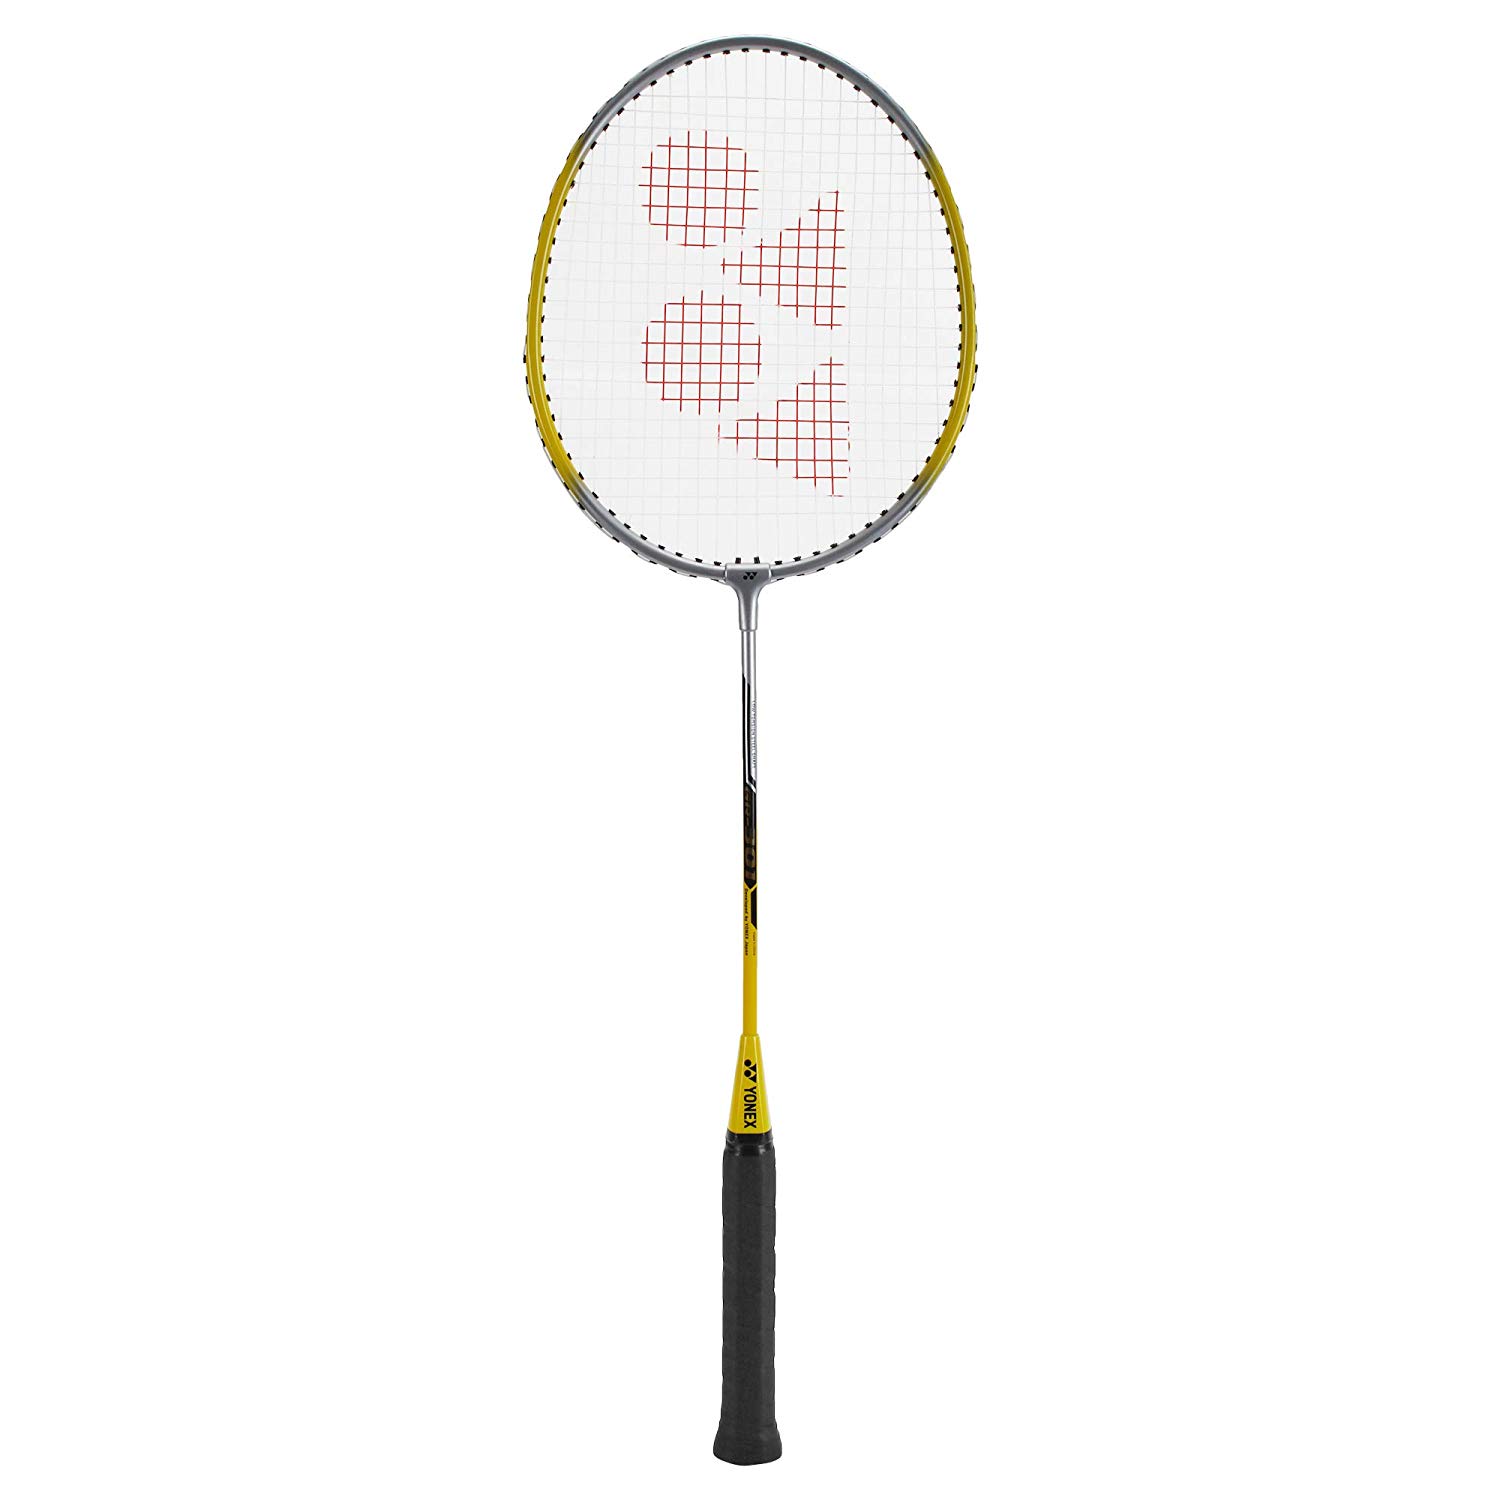 Yonex Badminton Racket Gr 301 Ireland, SAVE 49%